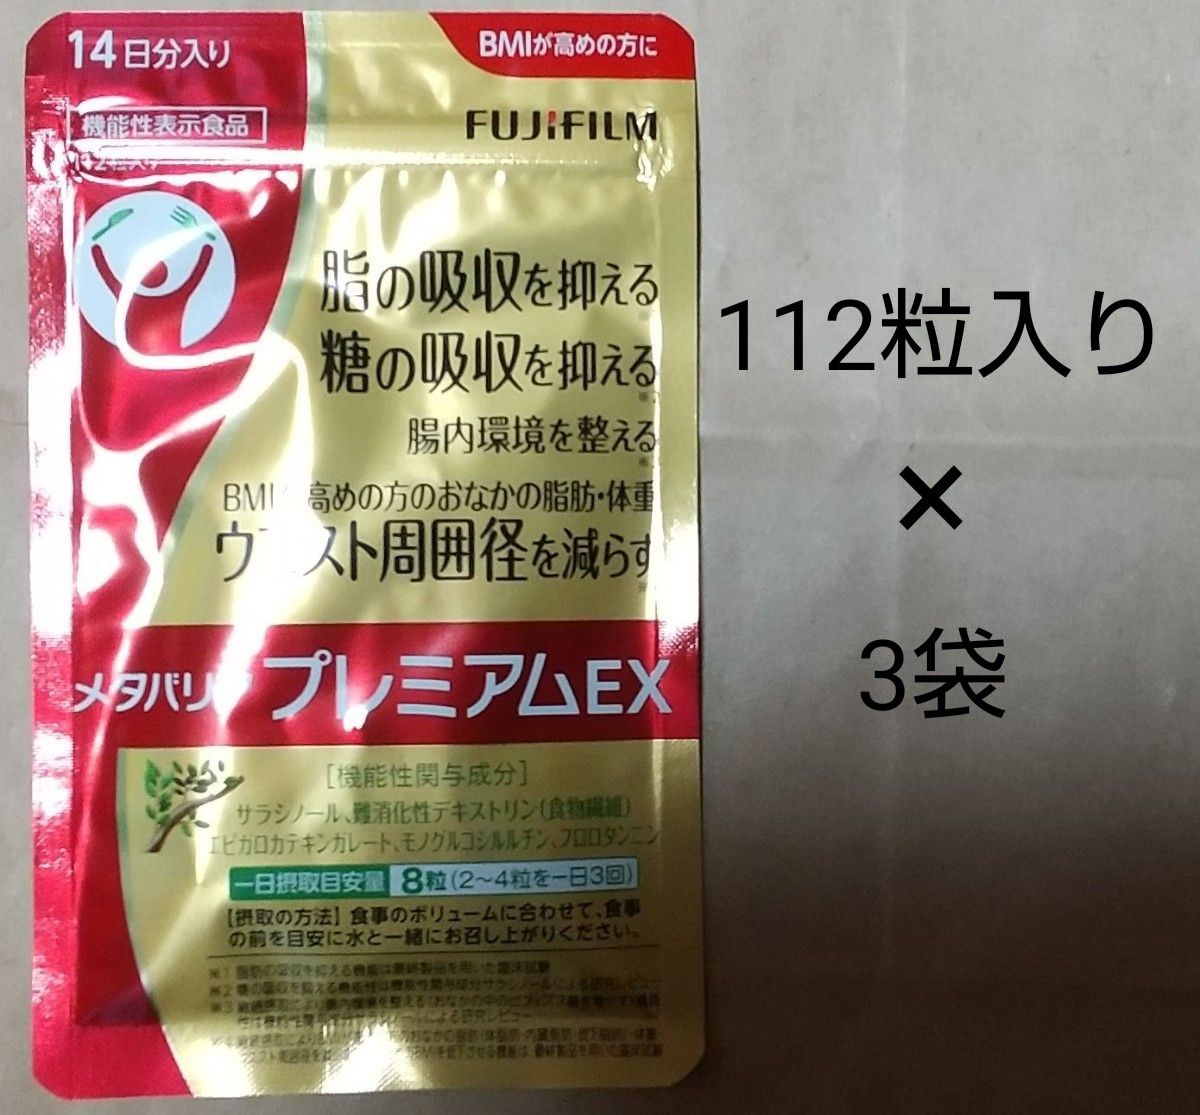 富士フイルム メタバリア プレミアムEX 30日分 3袋 サプリメント